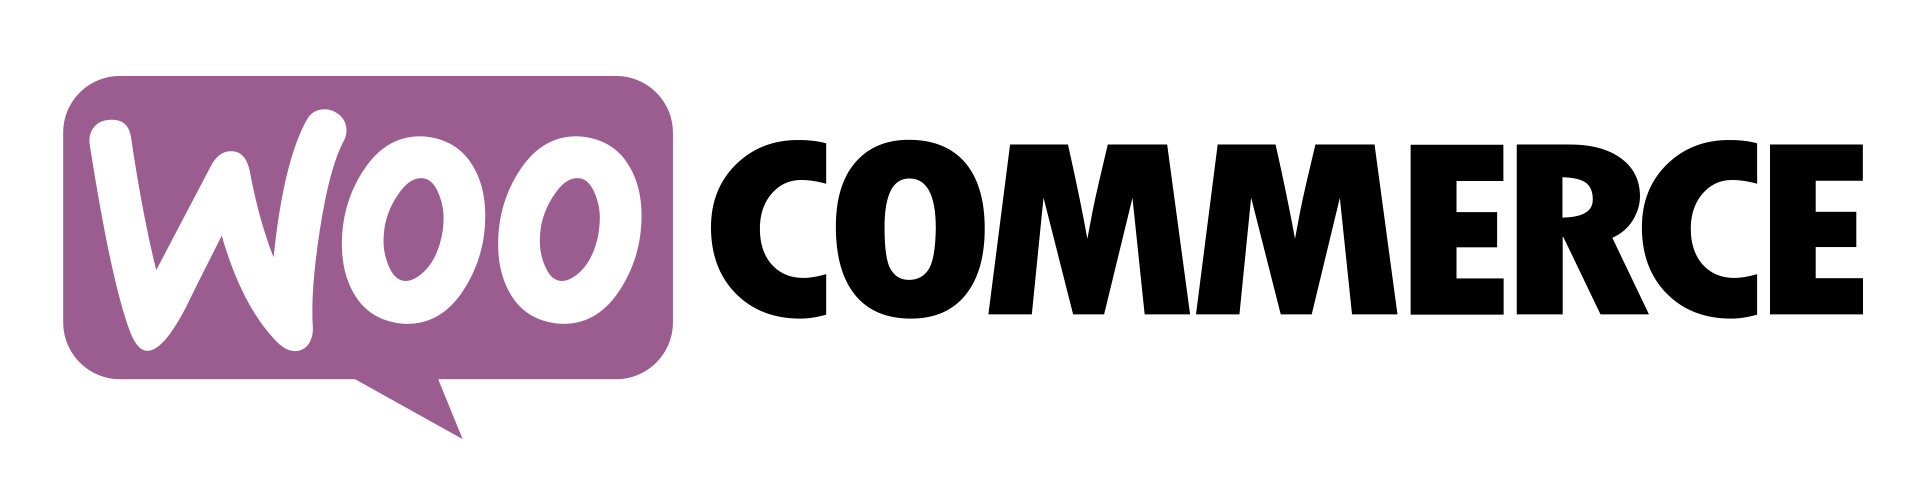 woocommerce-logo (1).png